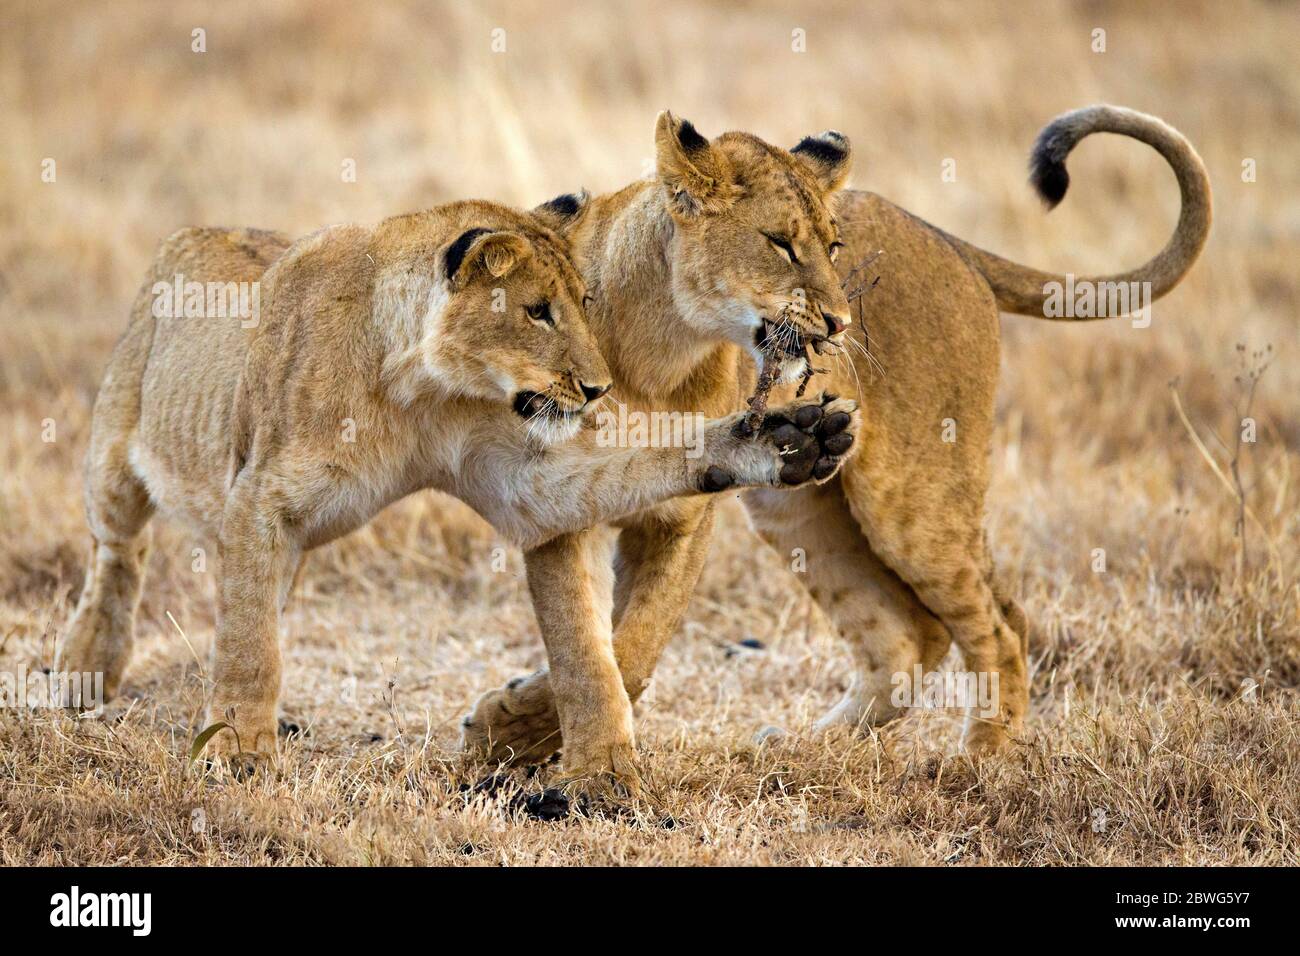 Photographie de la nature de deux lionnes (Panthera leo), zone de conservation de Ngorongoro, Tanzanie, Afrique Banque D'Images